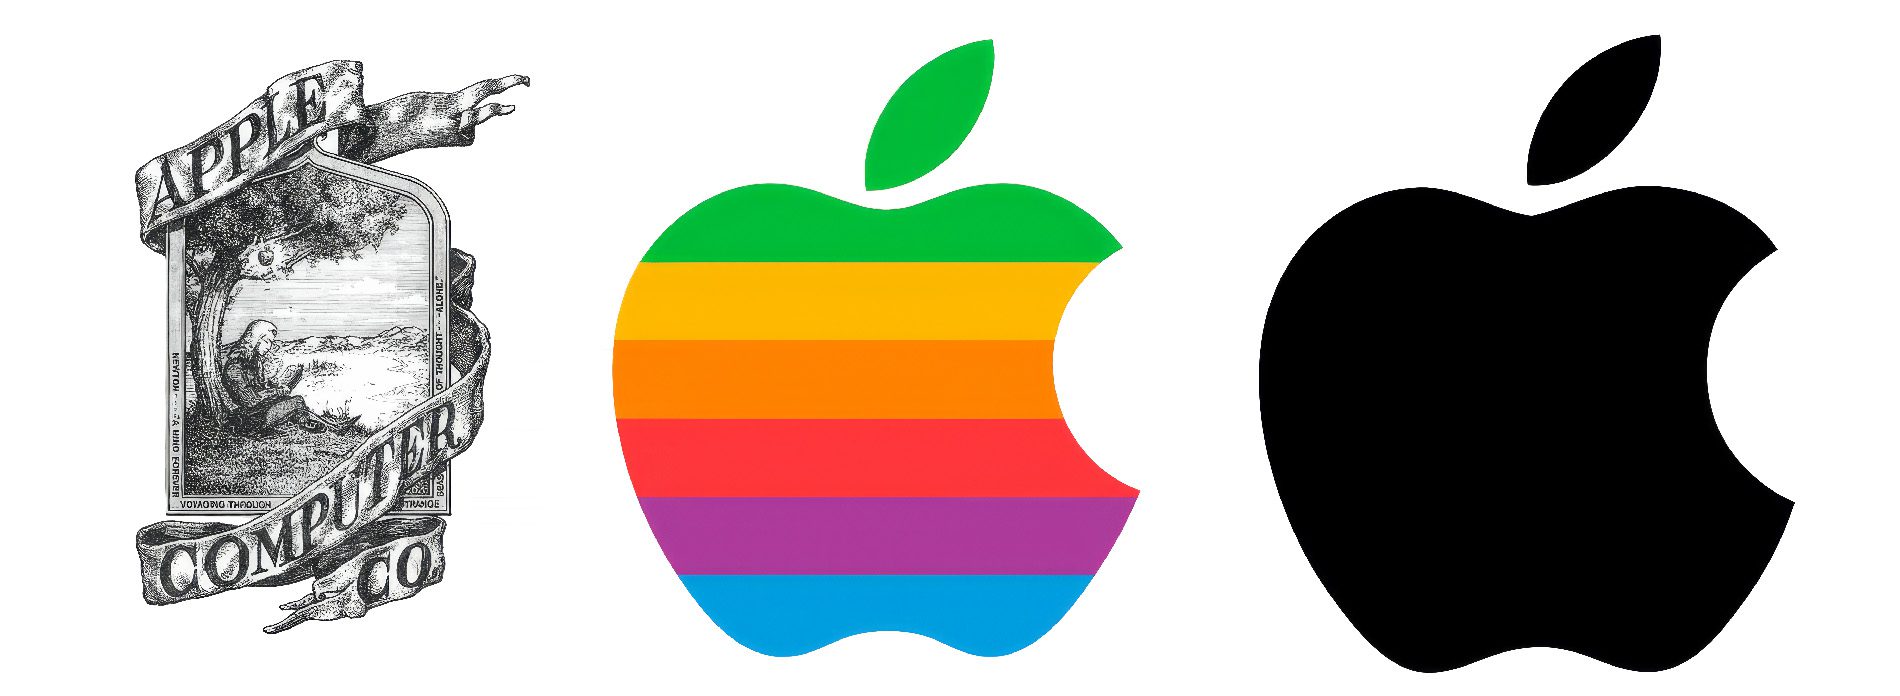 Das Apple Logo hat sich über die Jahre geändert. Ganz links ist das erste Apple Logo zu sehen.